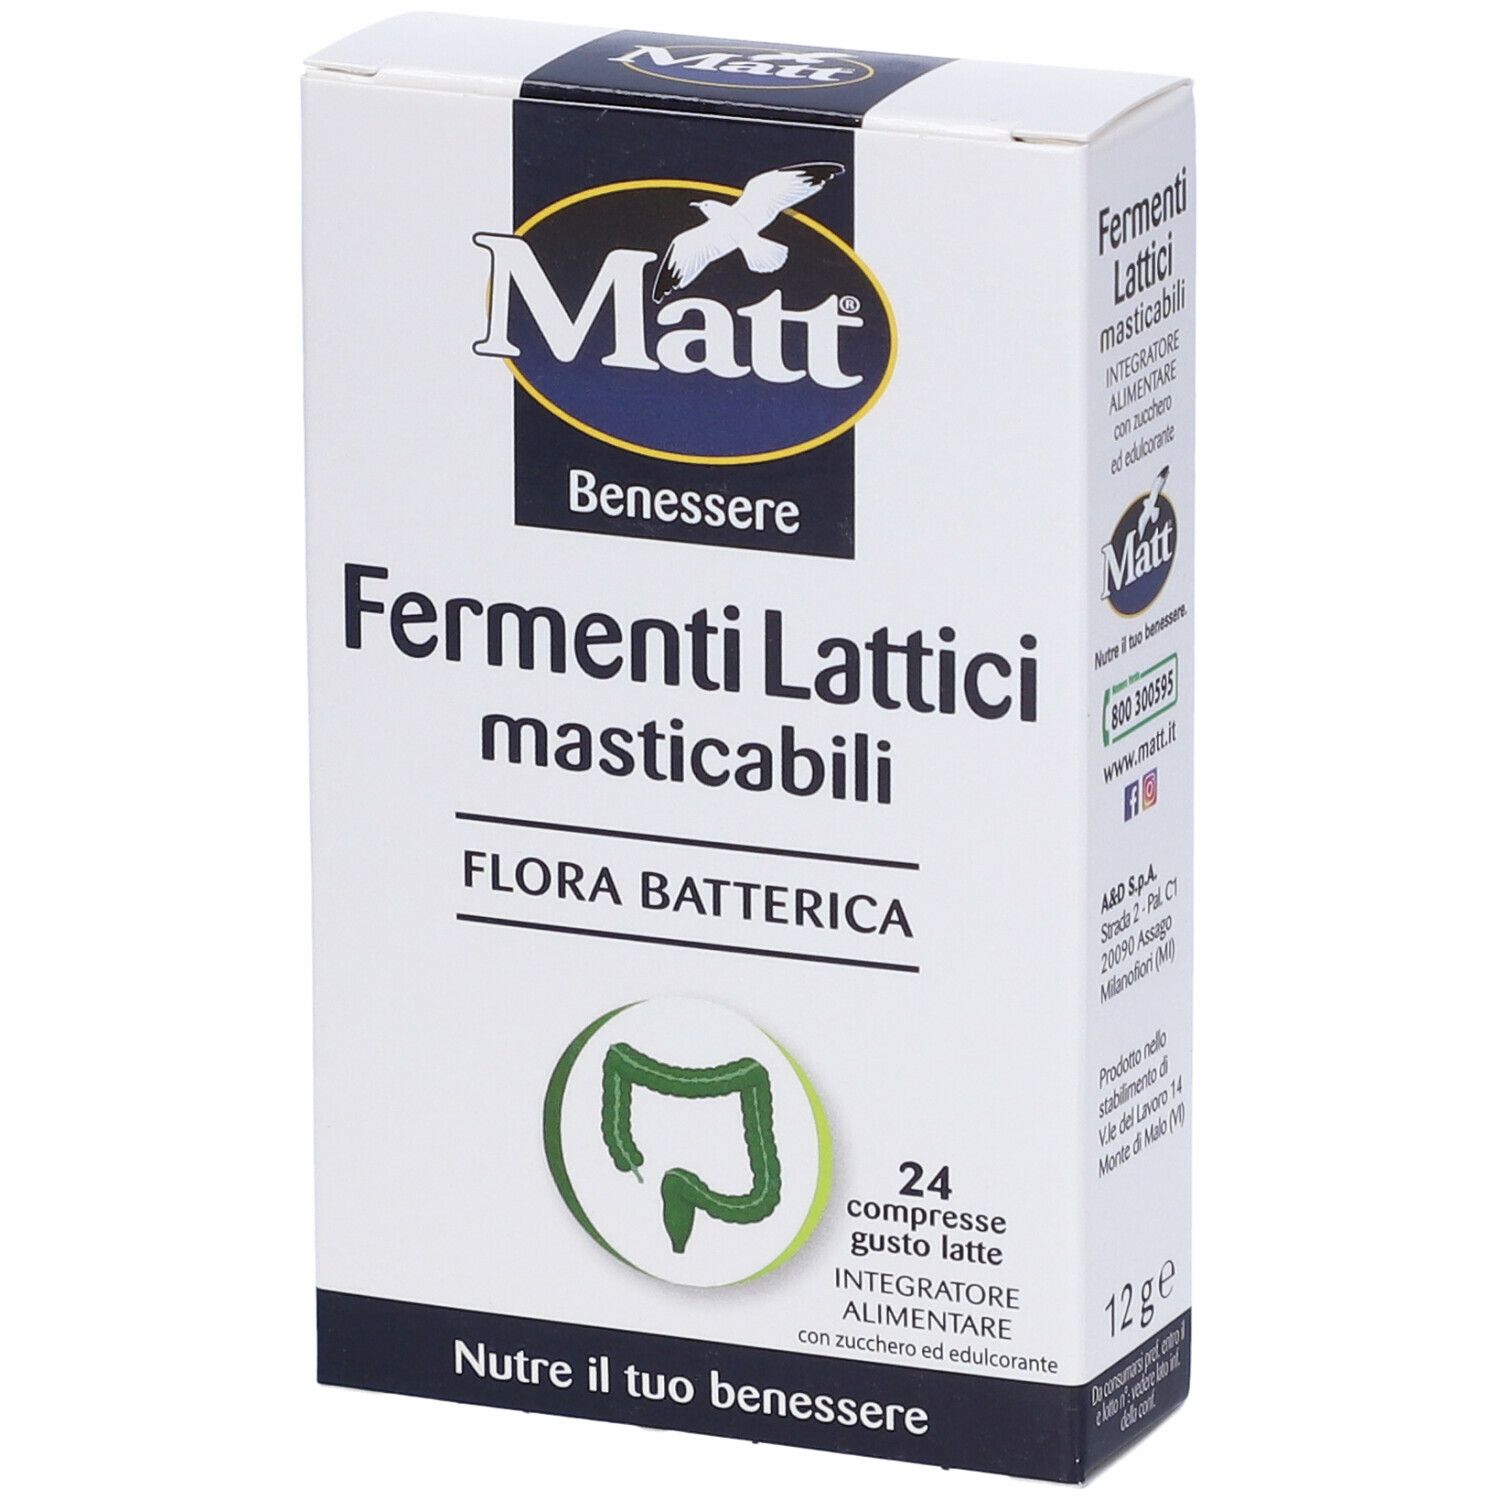 Image of Matt® Benessere Fermenti Lattici Masticabili